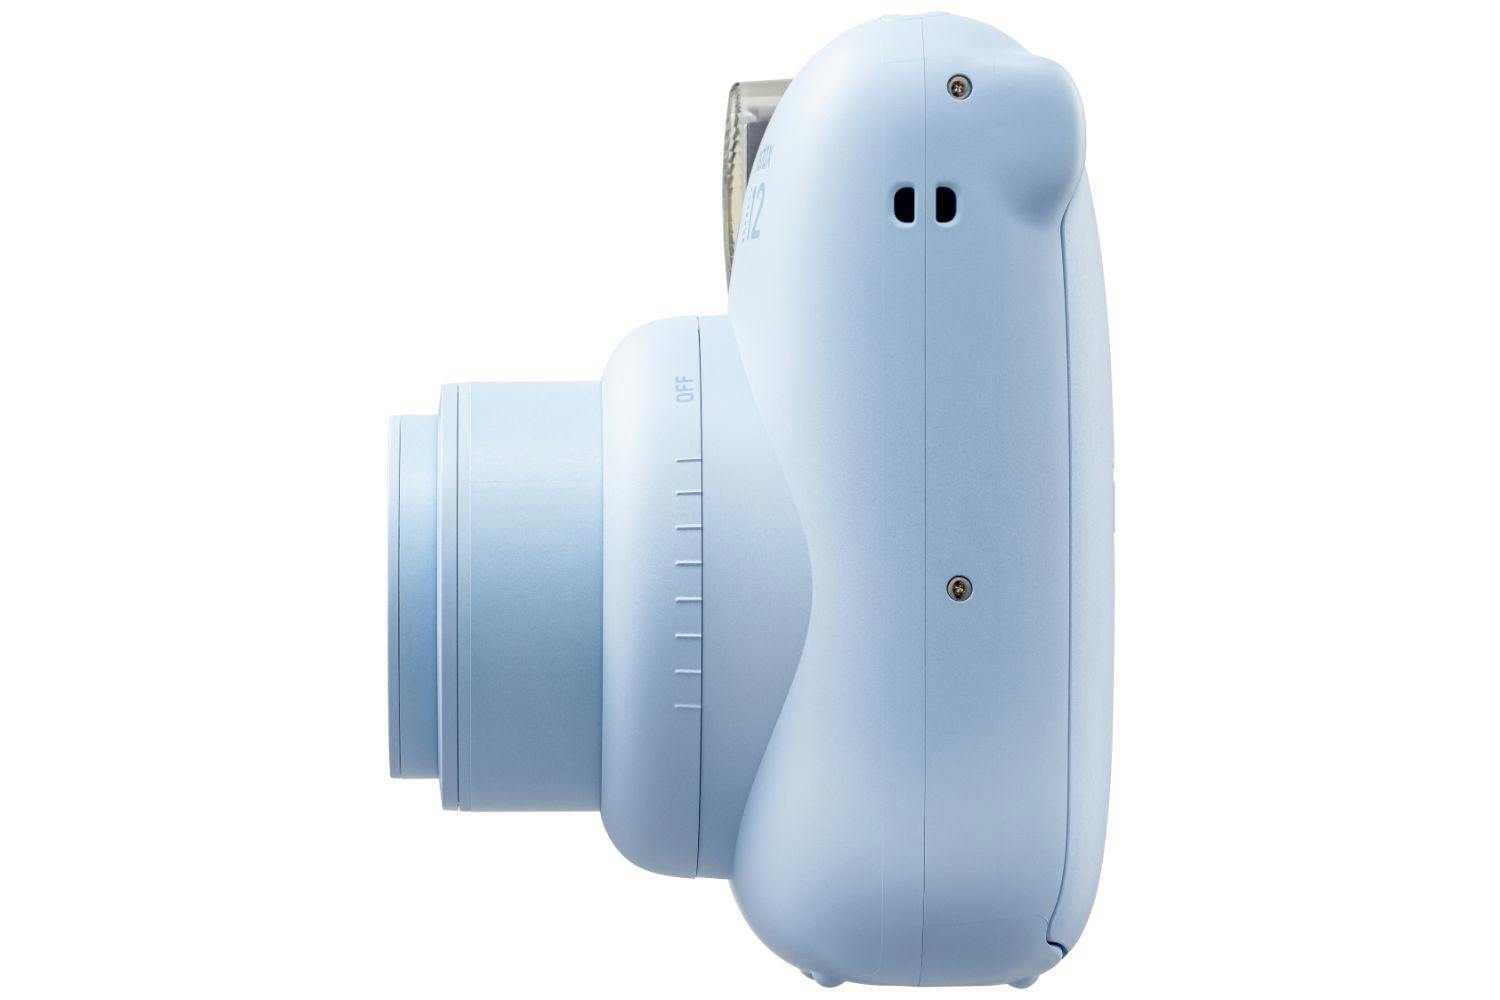 Cobalt Blue Fuji Instax Mini 9 Film Camera Collectors Instant -  Ireland